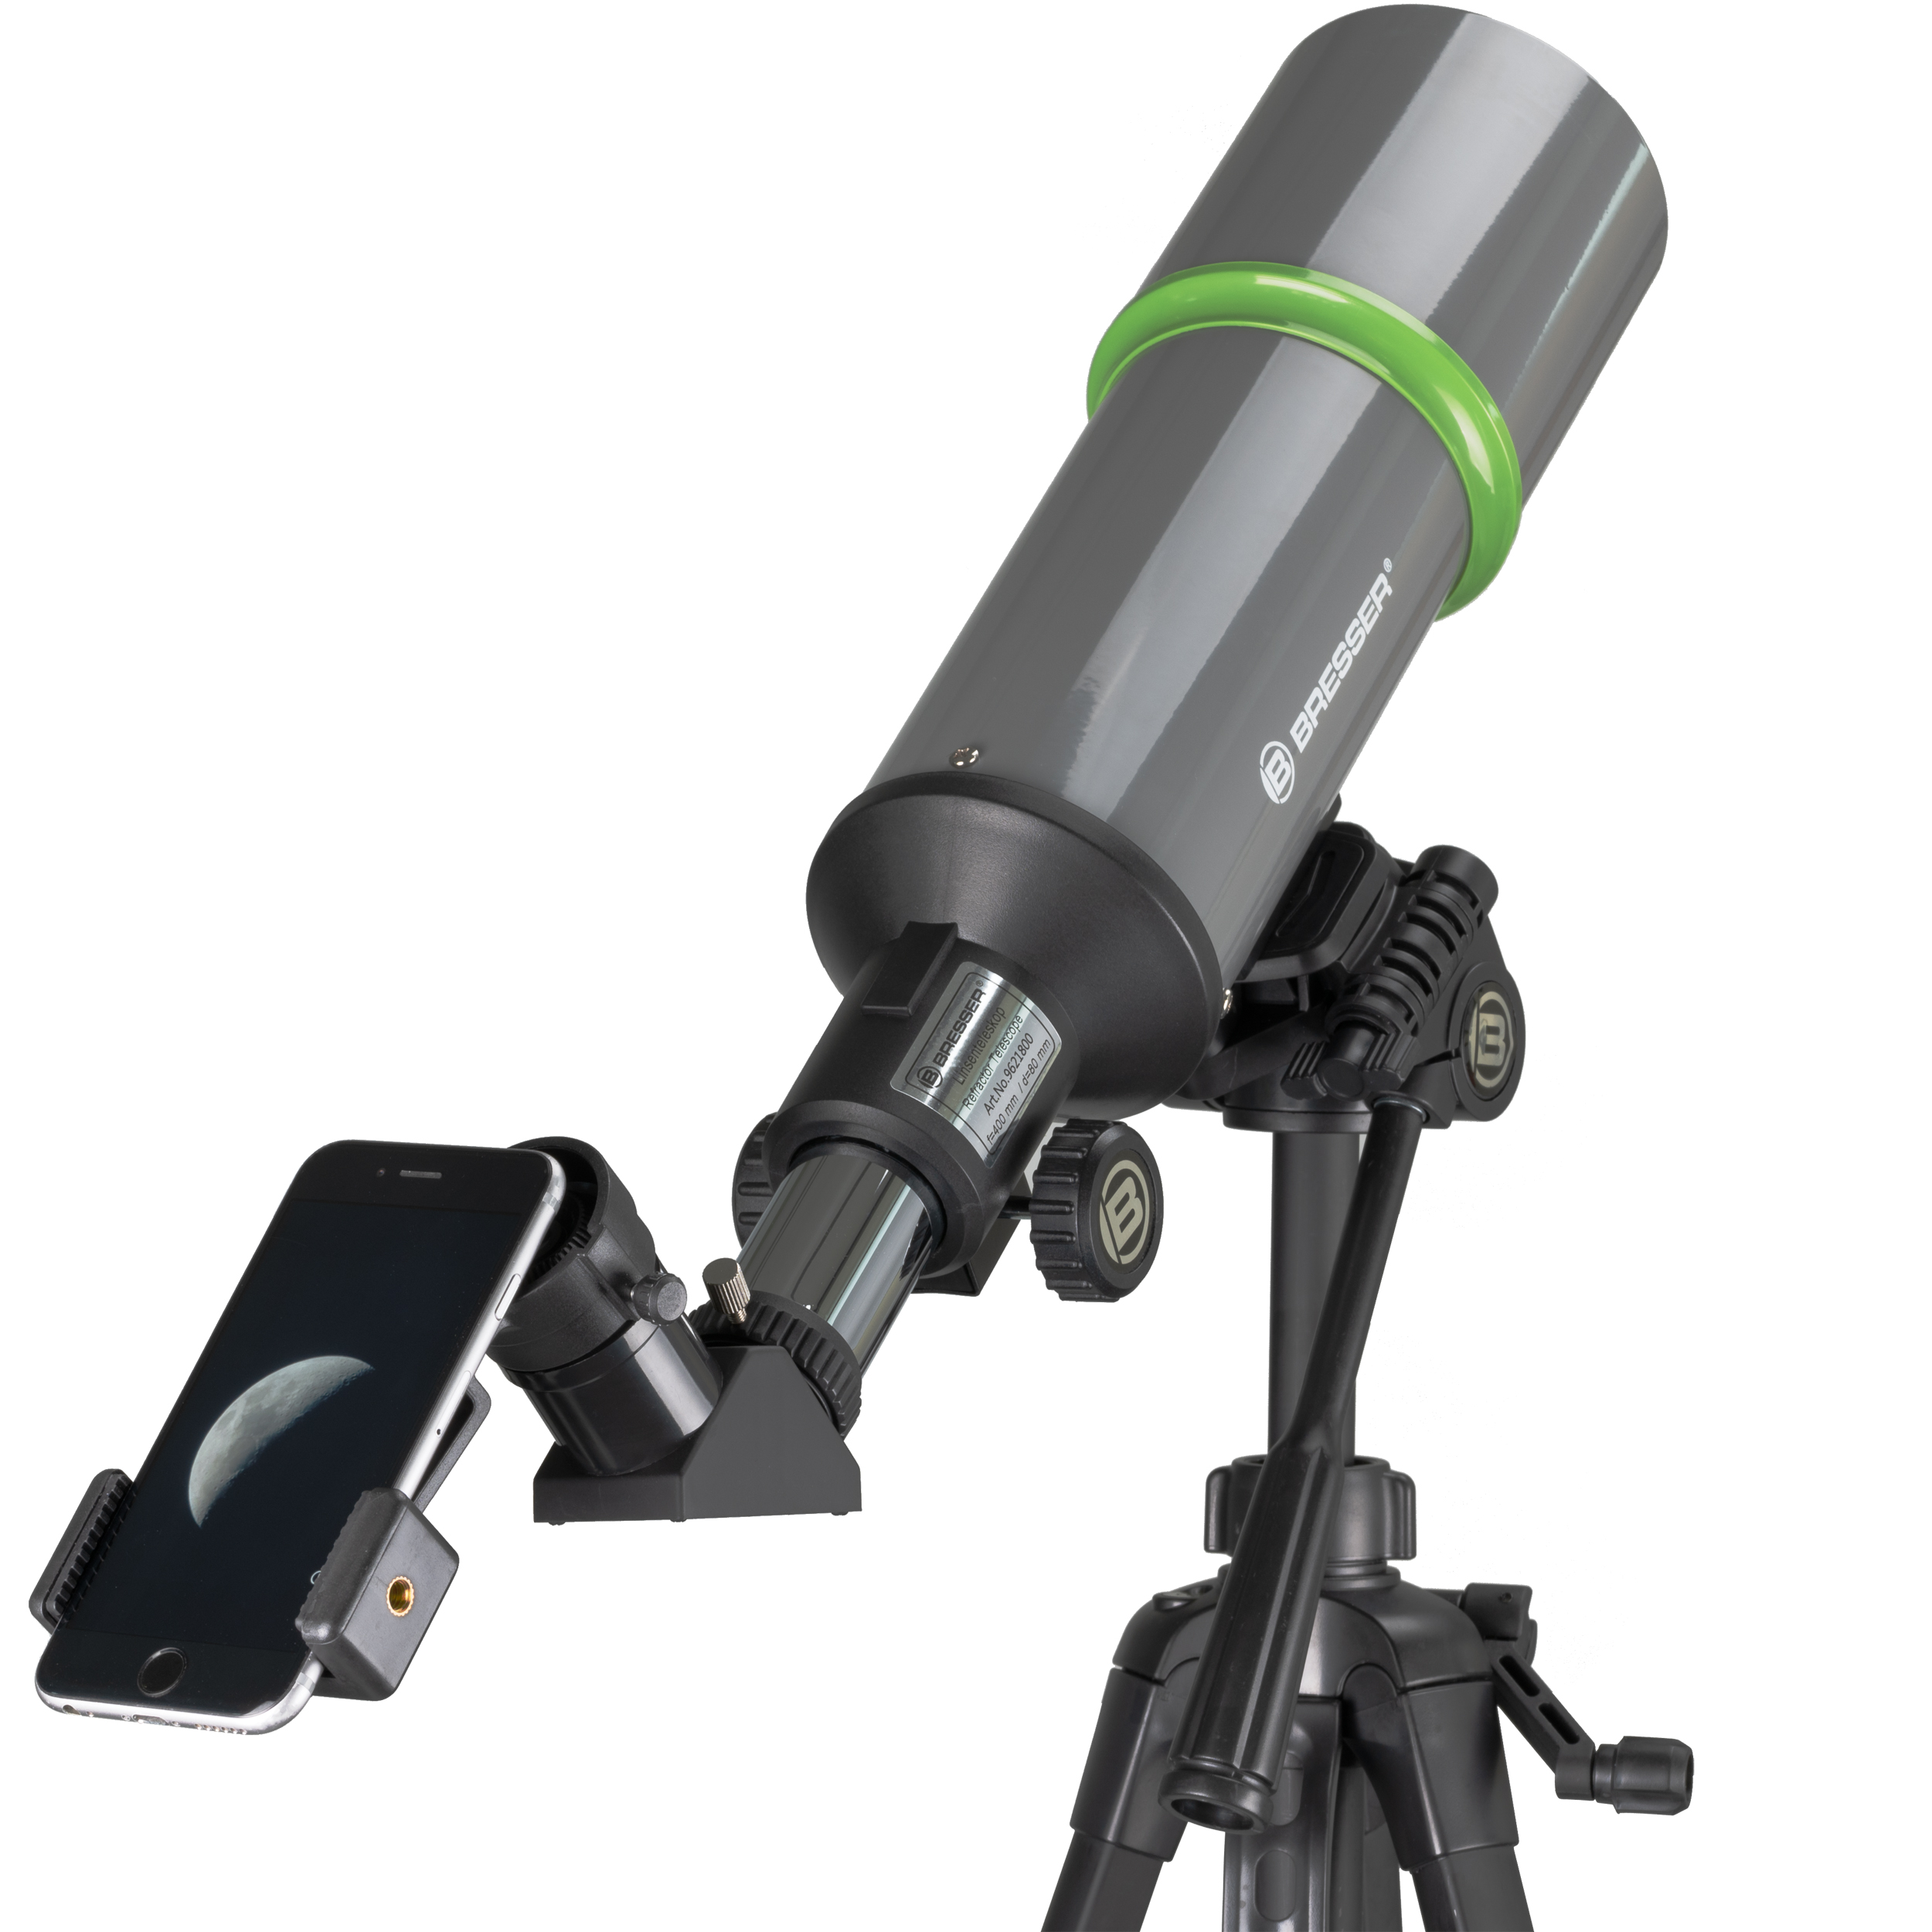  Telescopio da viaggio NightExplorer BRESSER 80/400 con zaino, adattatore per smartphone e accessori 